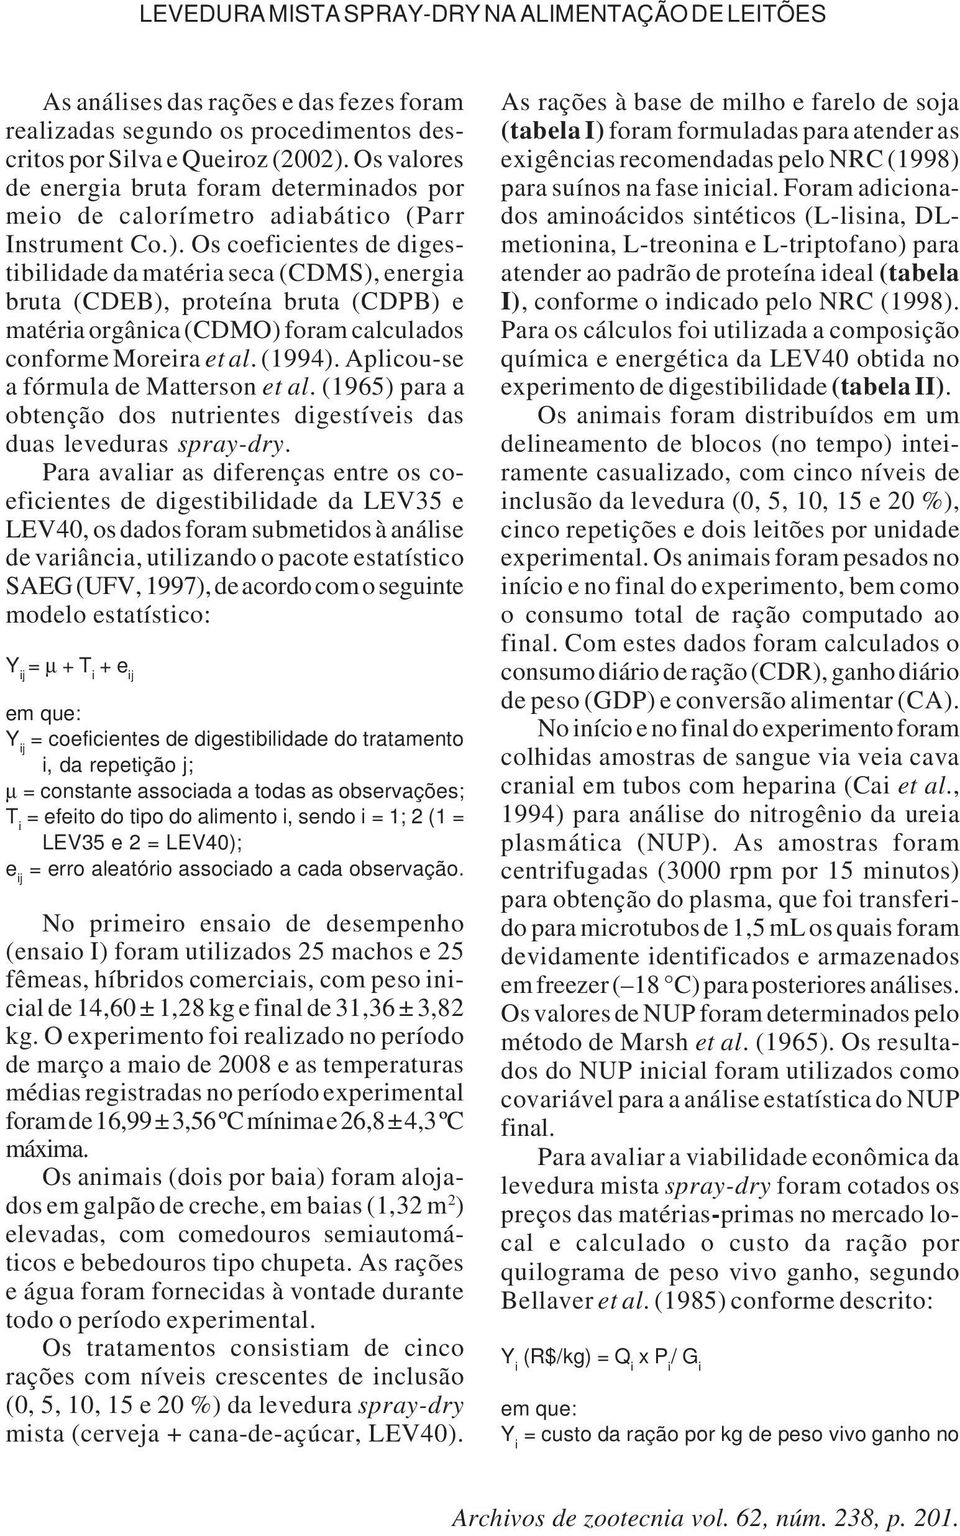 Os coeficientes de digestibilidade da matéria seca (CDMS), energia bruta (CDEB), proteína bruta (CDPB) e matéria orgânica (CDMO) foram calculados conforme Moreira et al. (1994).